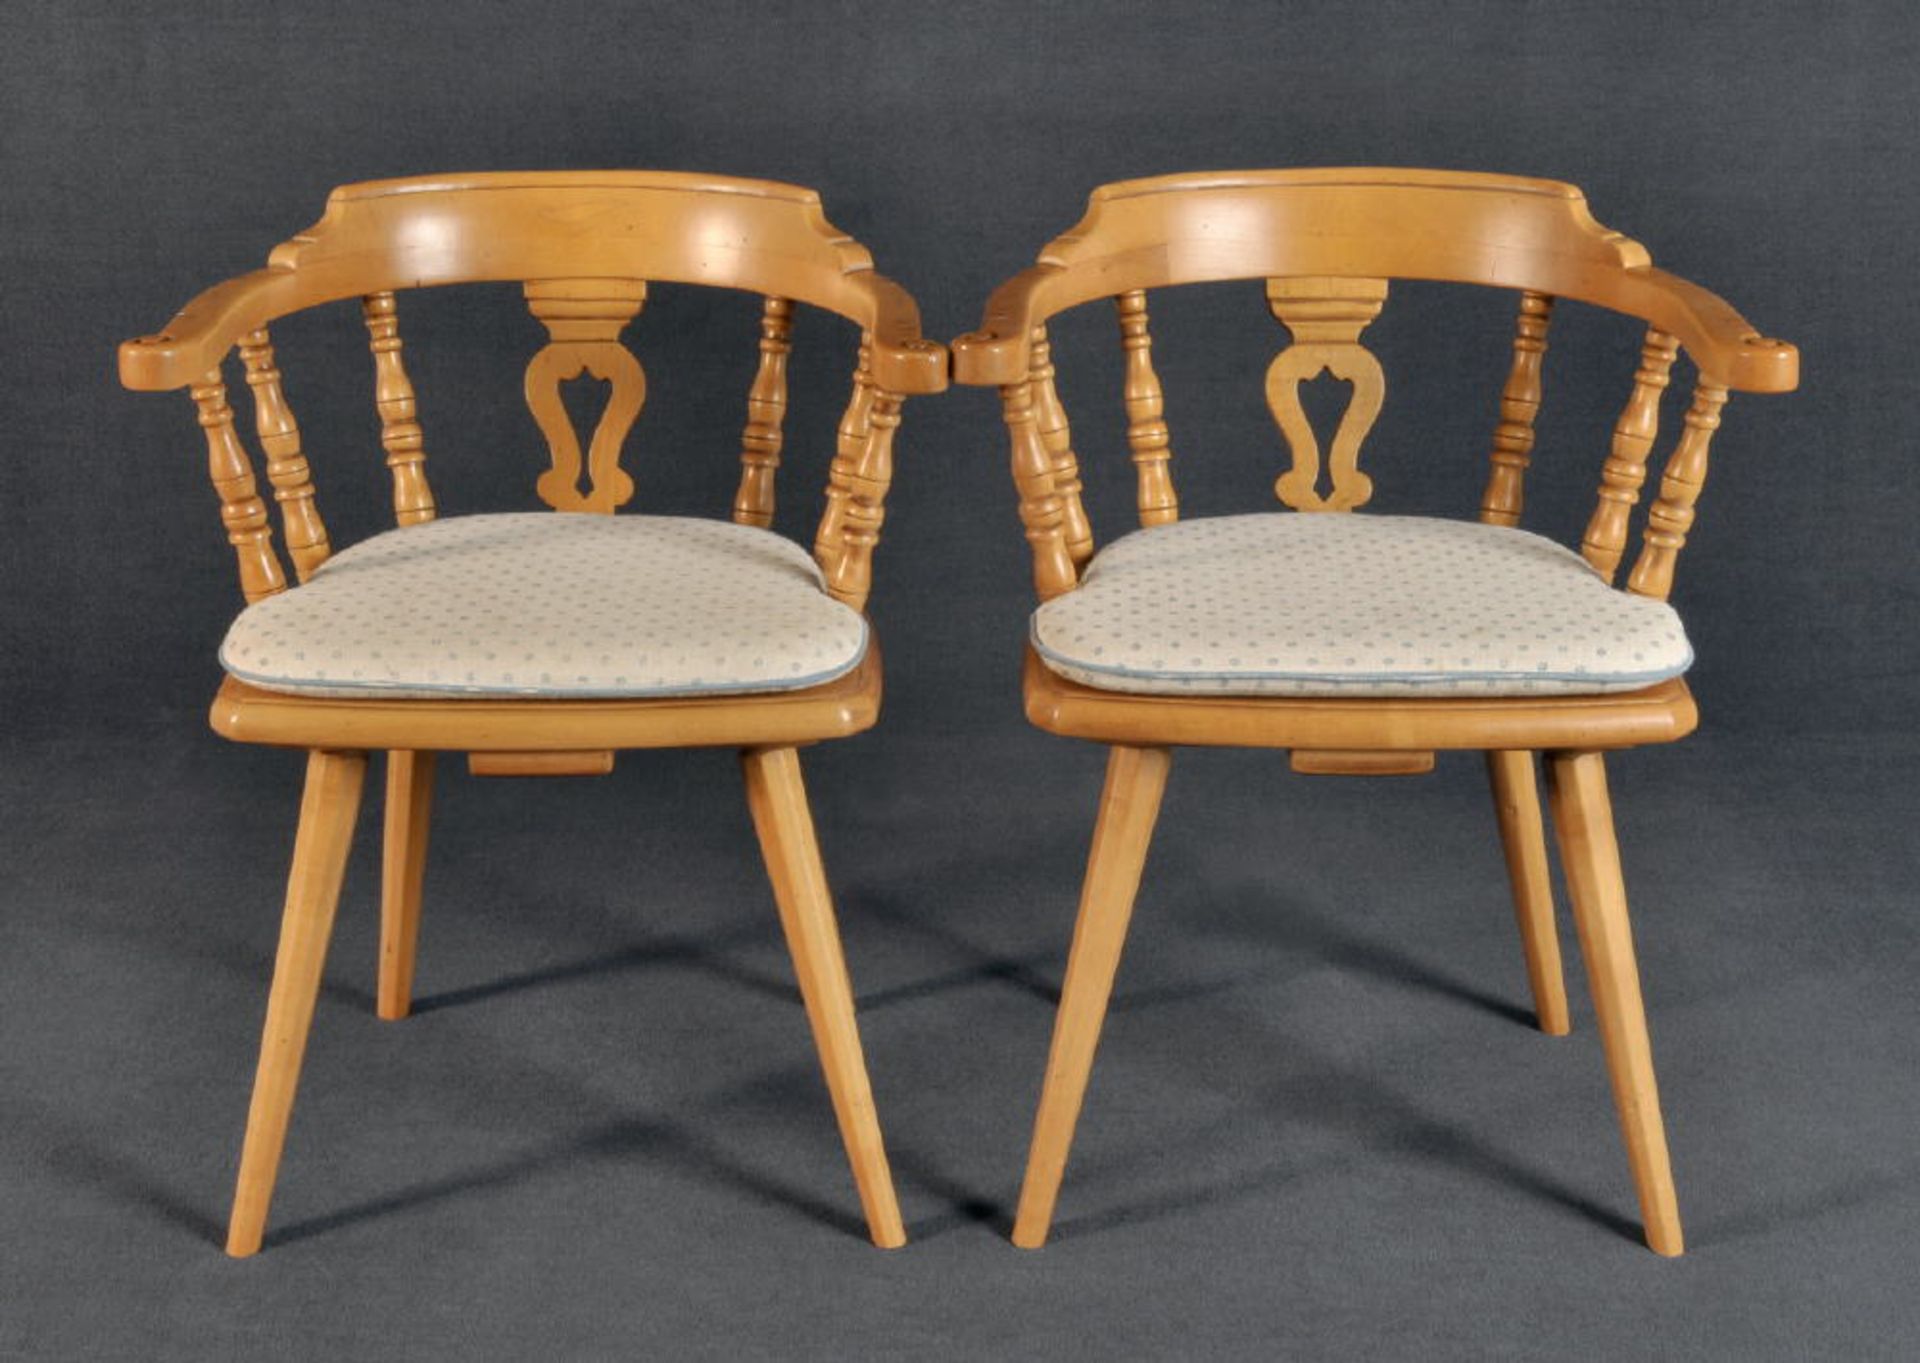 Armlehnenstühle, 2 StückHartholz, 4 konische, ausgestellte Beine, gerundete Rückenlehne mit